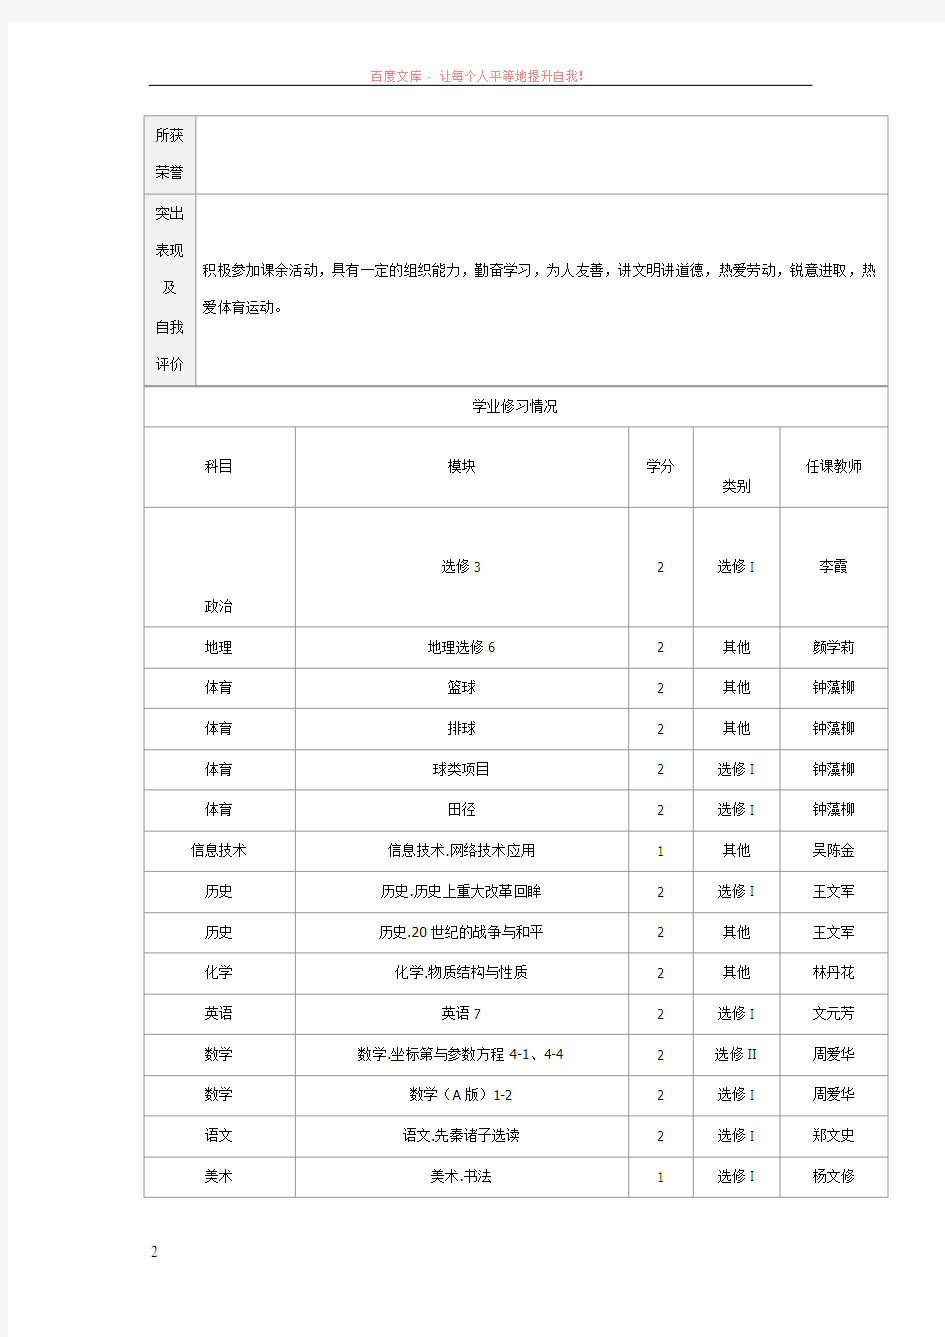 海南省普通高中学生综合素质评价档案 (1)